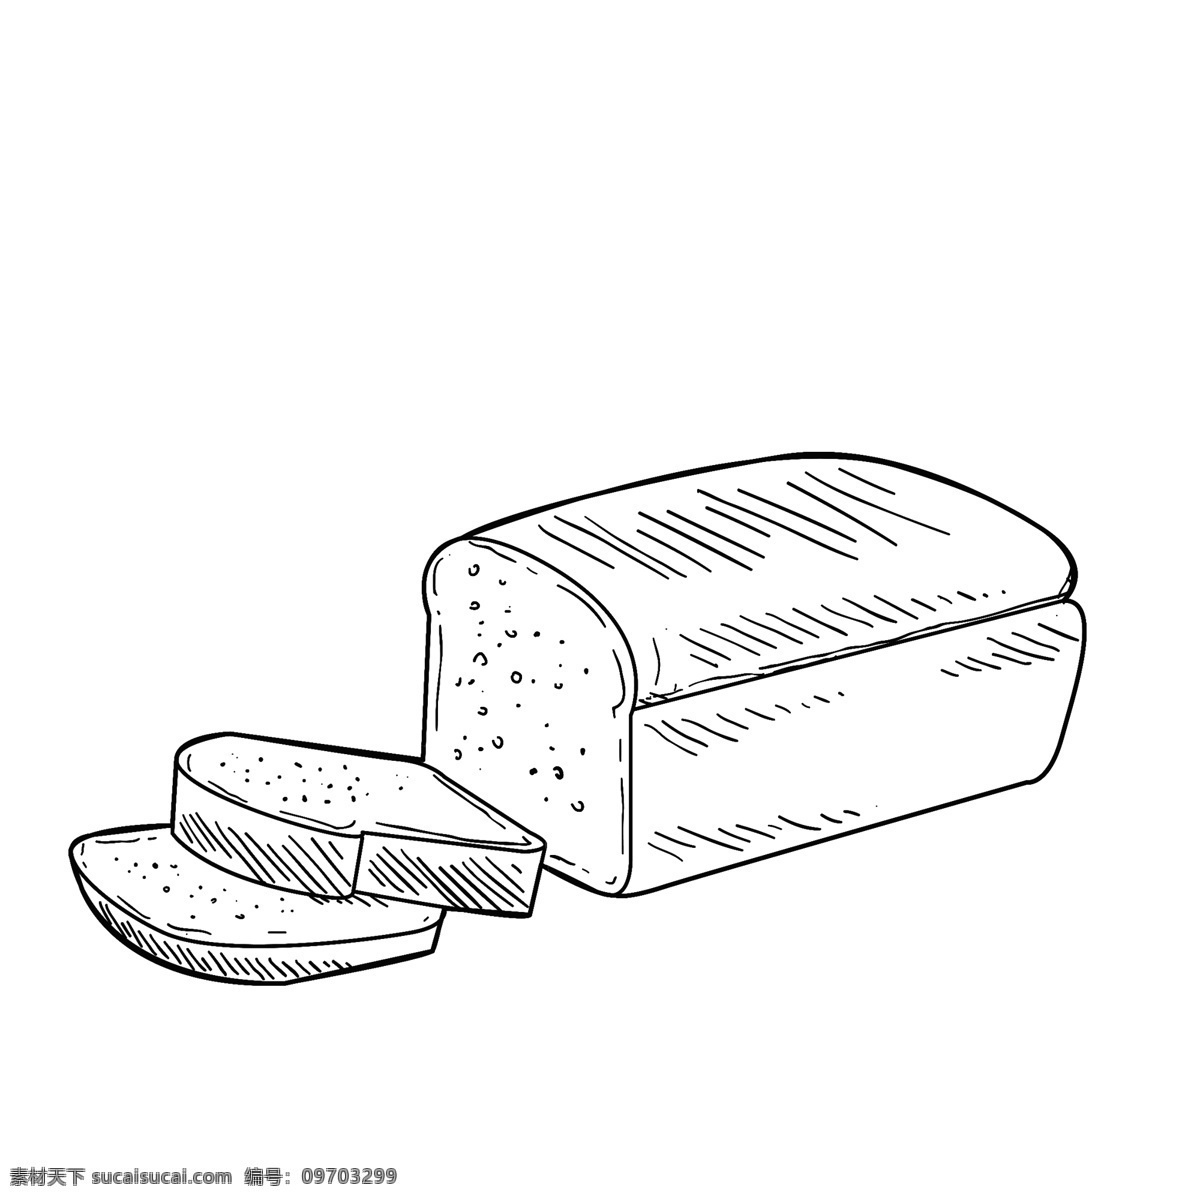 手绘 面包 素描 元素 可爱 卡通 图标 剪影 卡通图标食物 创意 蛋糕 黑白 食物 矢量黑白素描